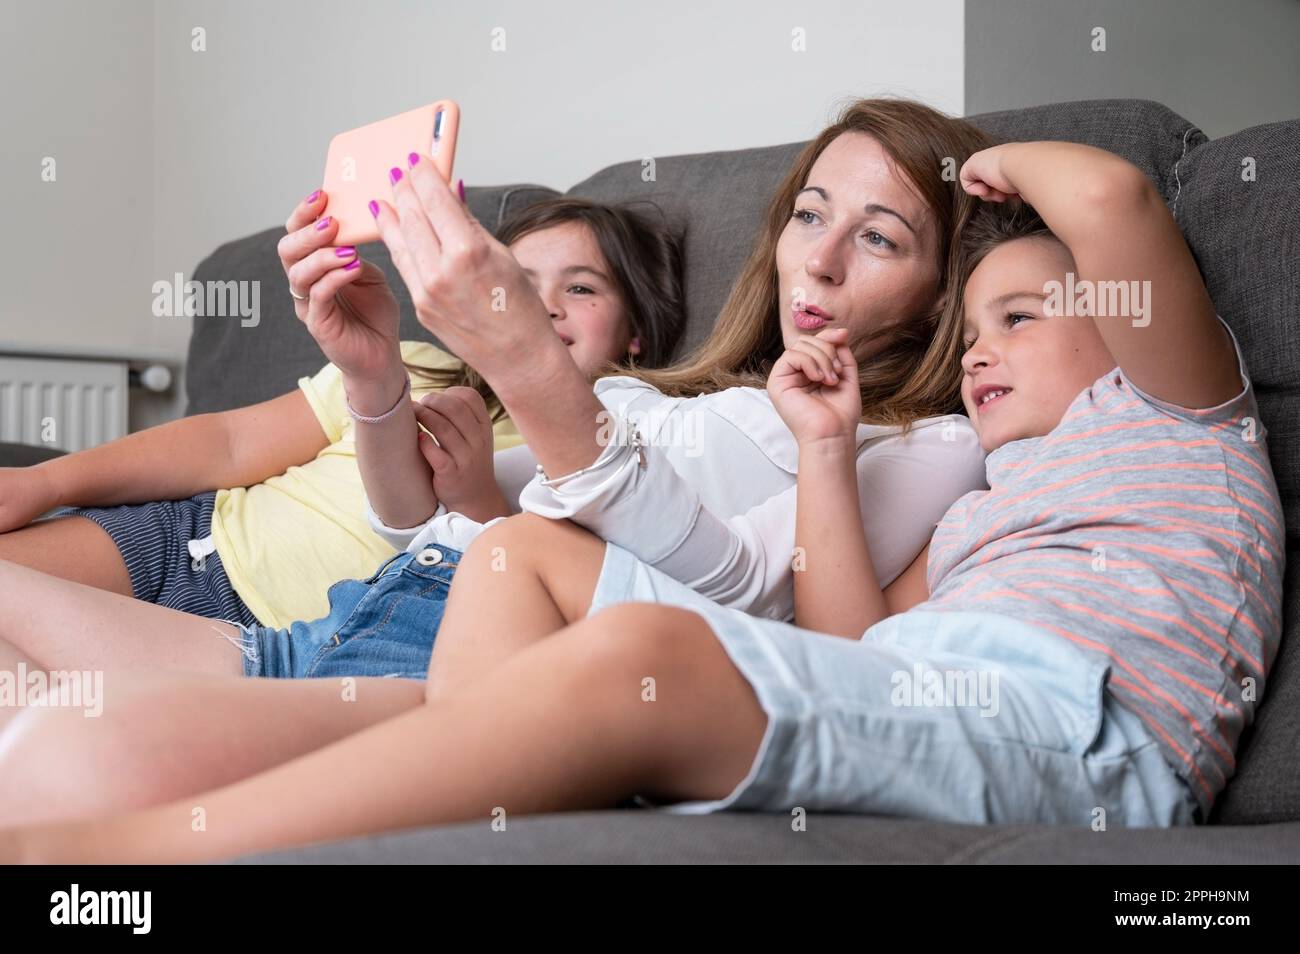 Mère heureuse avec ses enfants font un selfie ou un appel vidéo au père ou à des parents dans un canapé. Concept de technologie, nouvelle génération, famille, connexion, parentalité. Banque D'Images